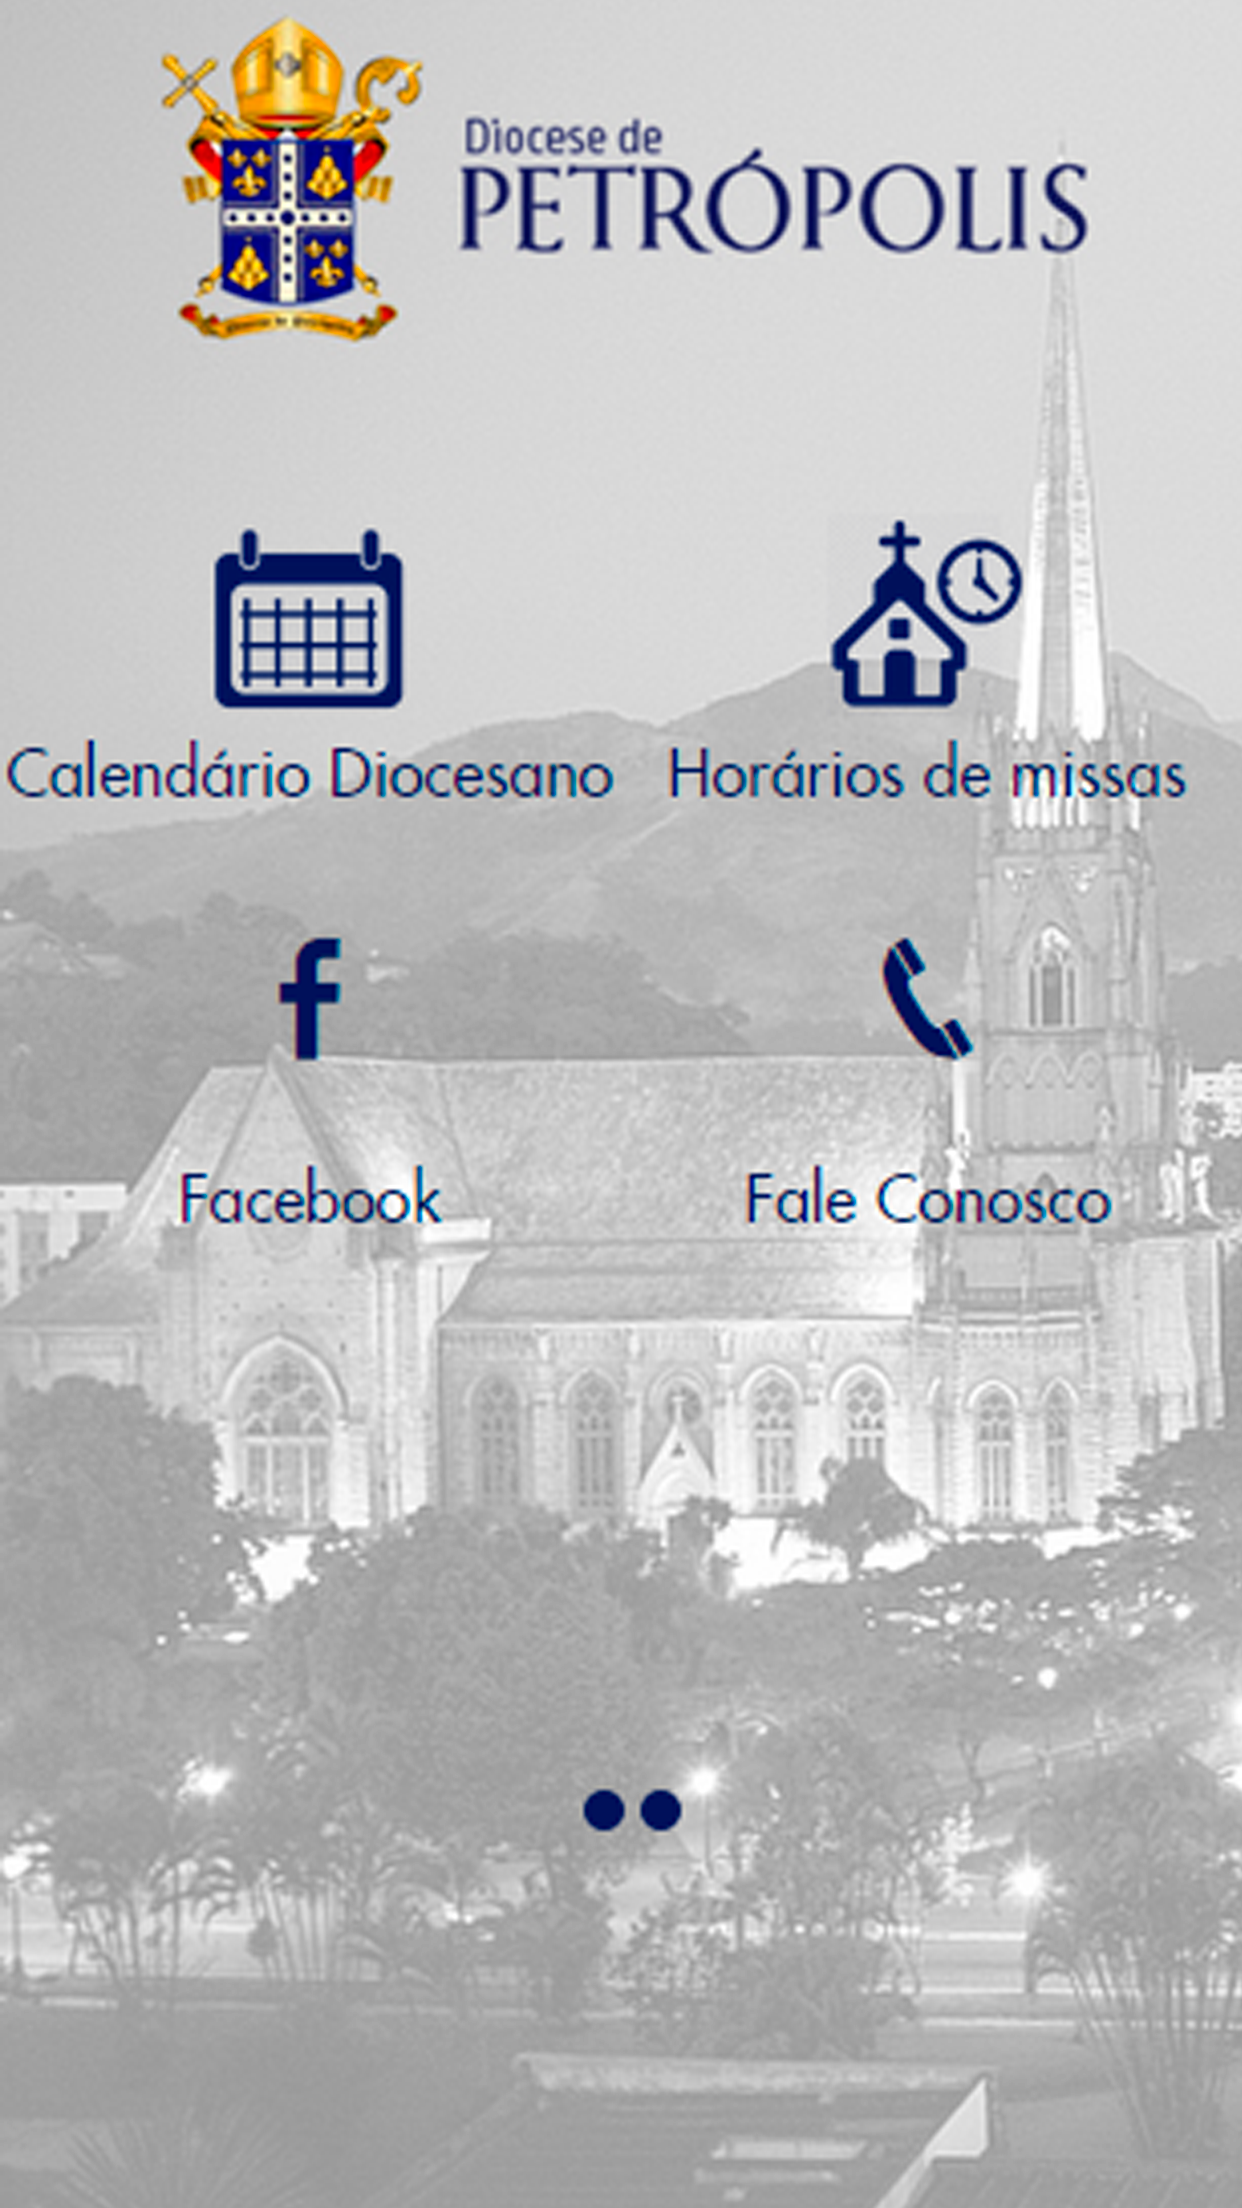 Android application Diocese de Petrópolis screenshort